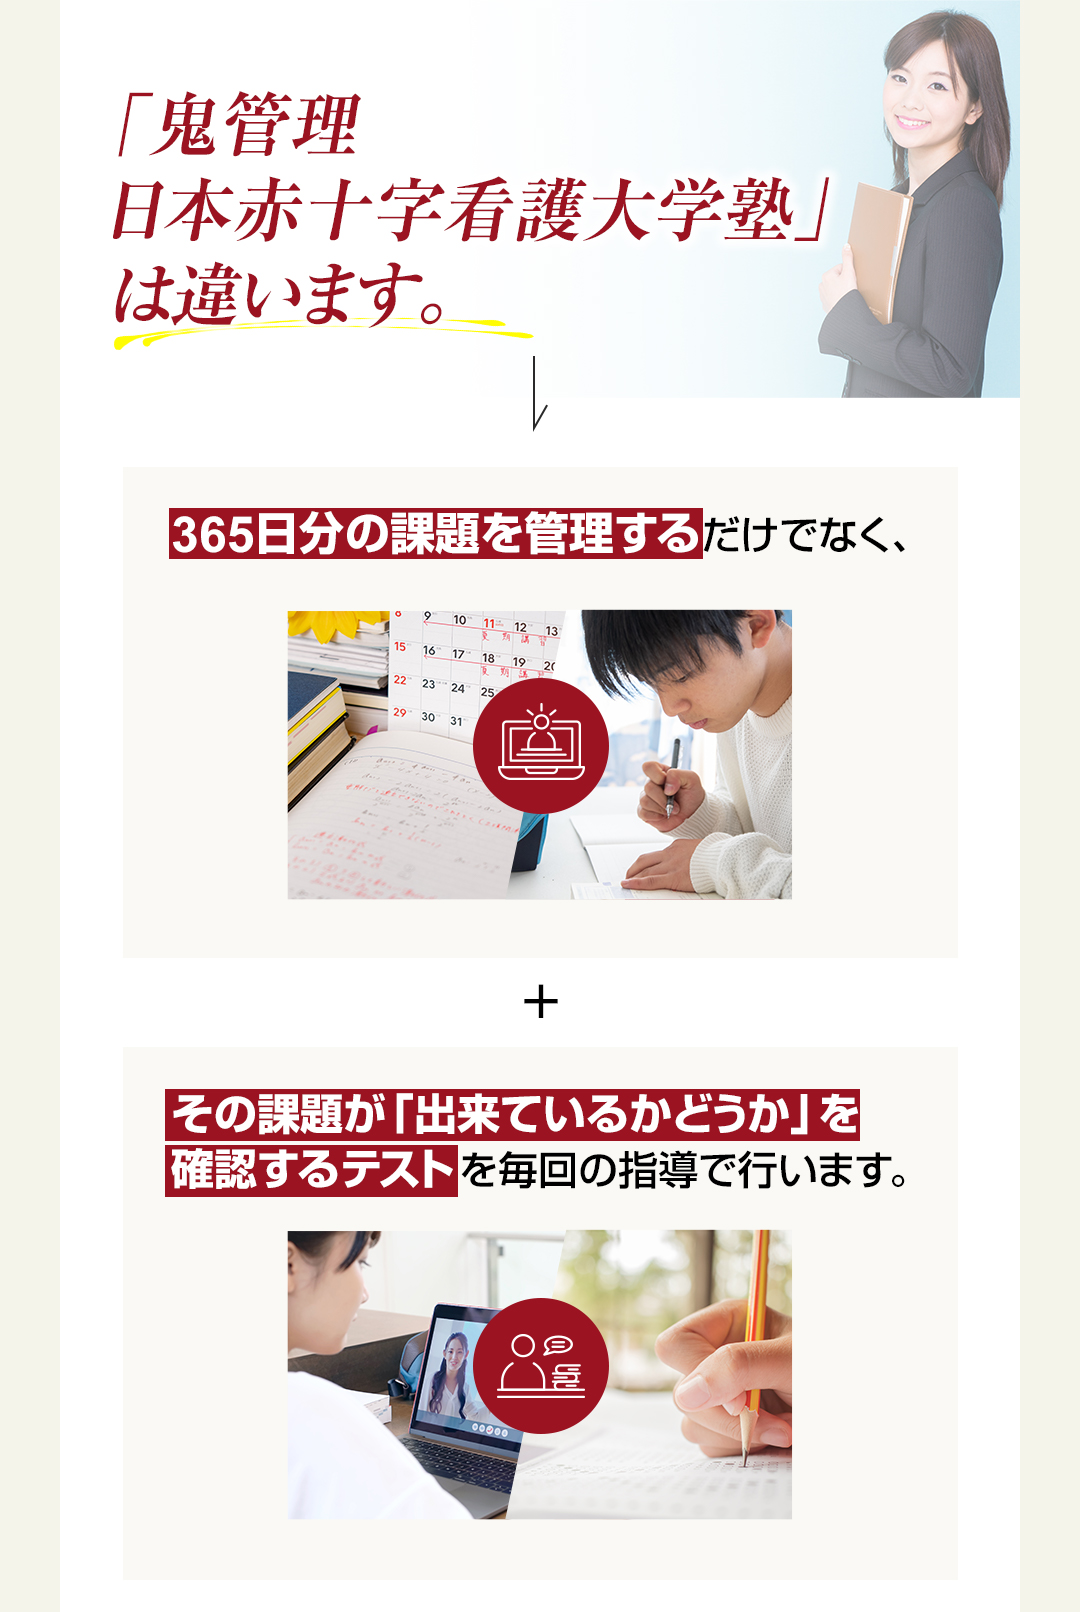 「鬼管理日本赤十字看護大学塾」は365日分の課題を管理するだけでなくその課題ができているかどうか確認するテストを行います